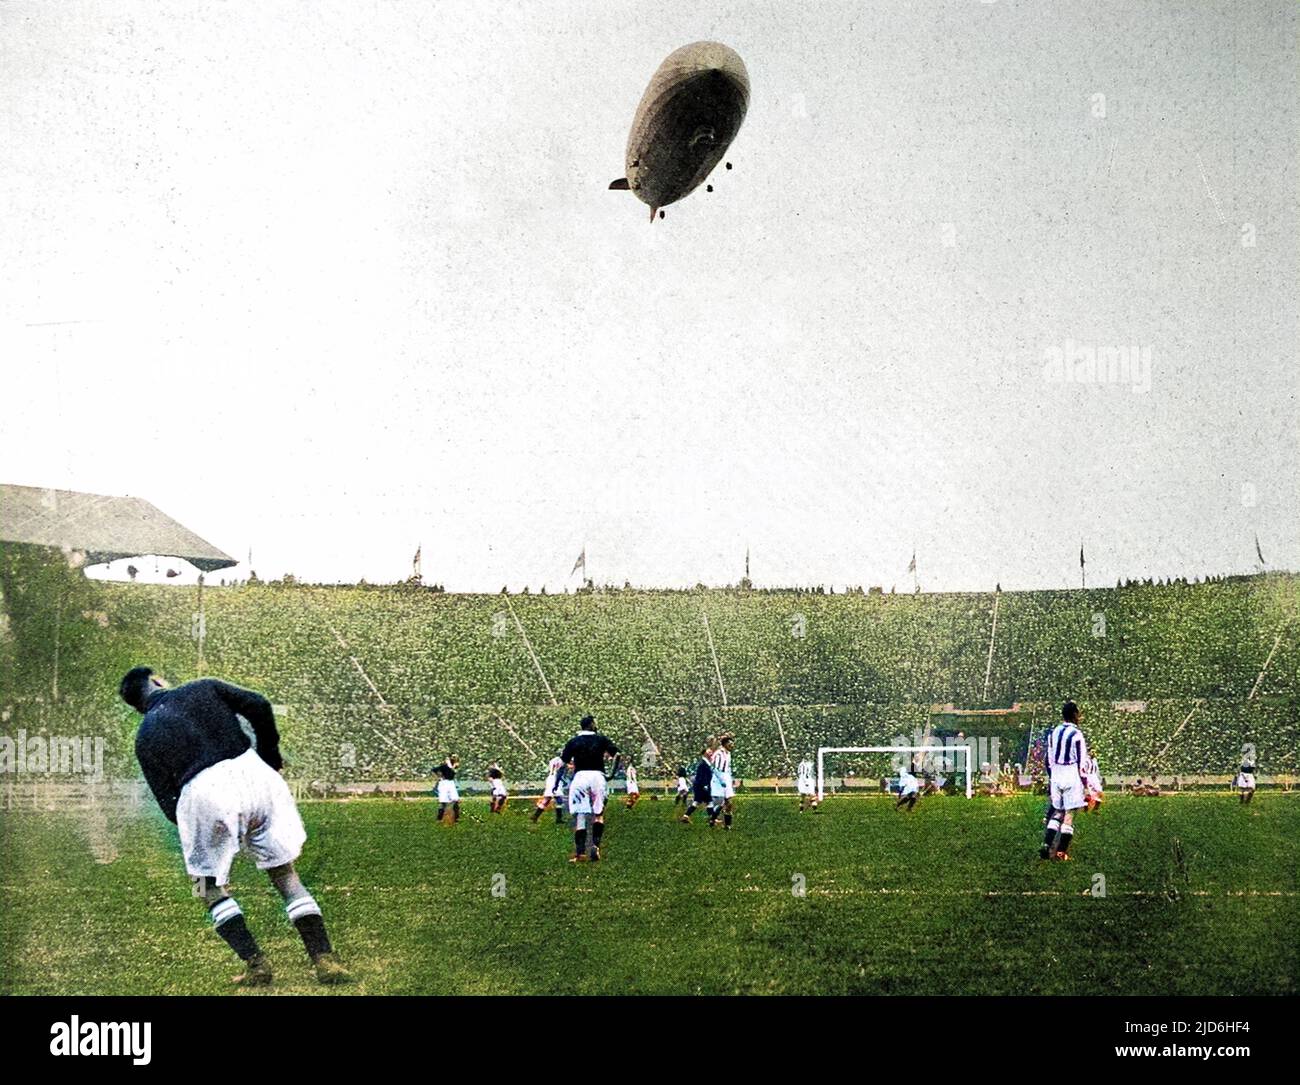 Stadio di Wembley, durante la città di Huddersfield vs Arsenal F.A. Finale di Coppa del 1930, con il 'Graf Zeppelin' nel cielo sopra. Si è riferito che il veliero tedesco "si è mantenuto molto basso sul terreno, sconcertando giocatori e spettatori con il ruggito assordante dei suoi motori”. Arsenal ha vinto la partita 2-0. Versione colorata di: 10219005 Data: 1930 Foto Stock